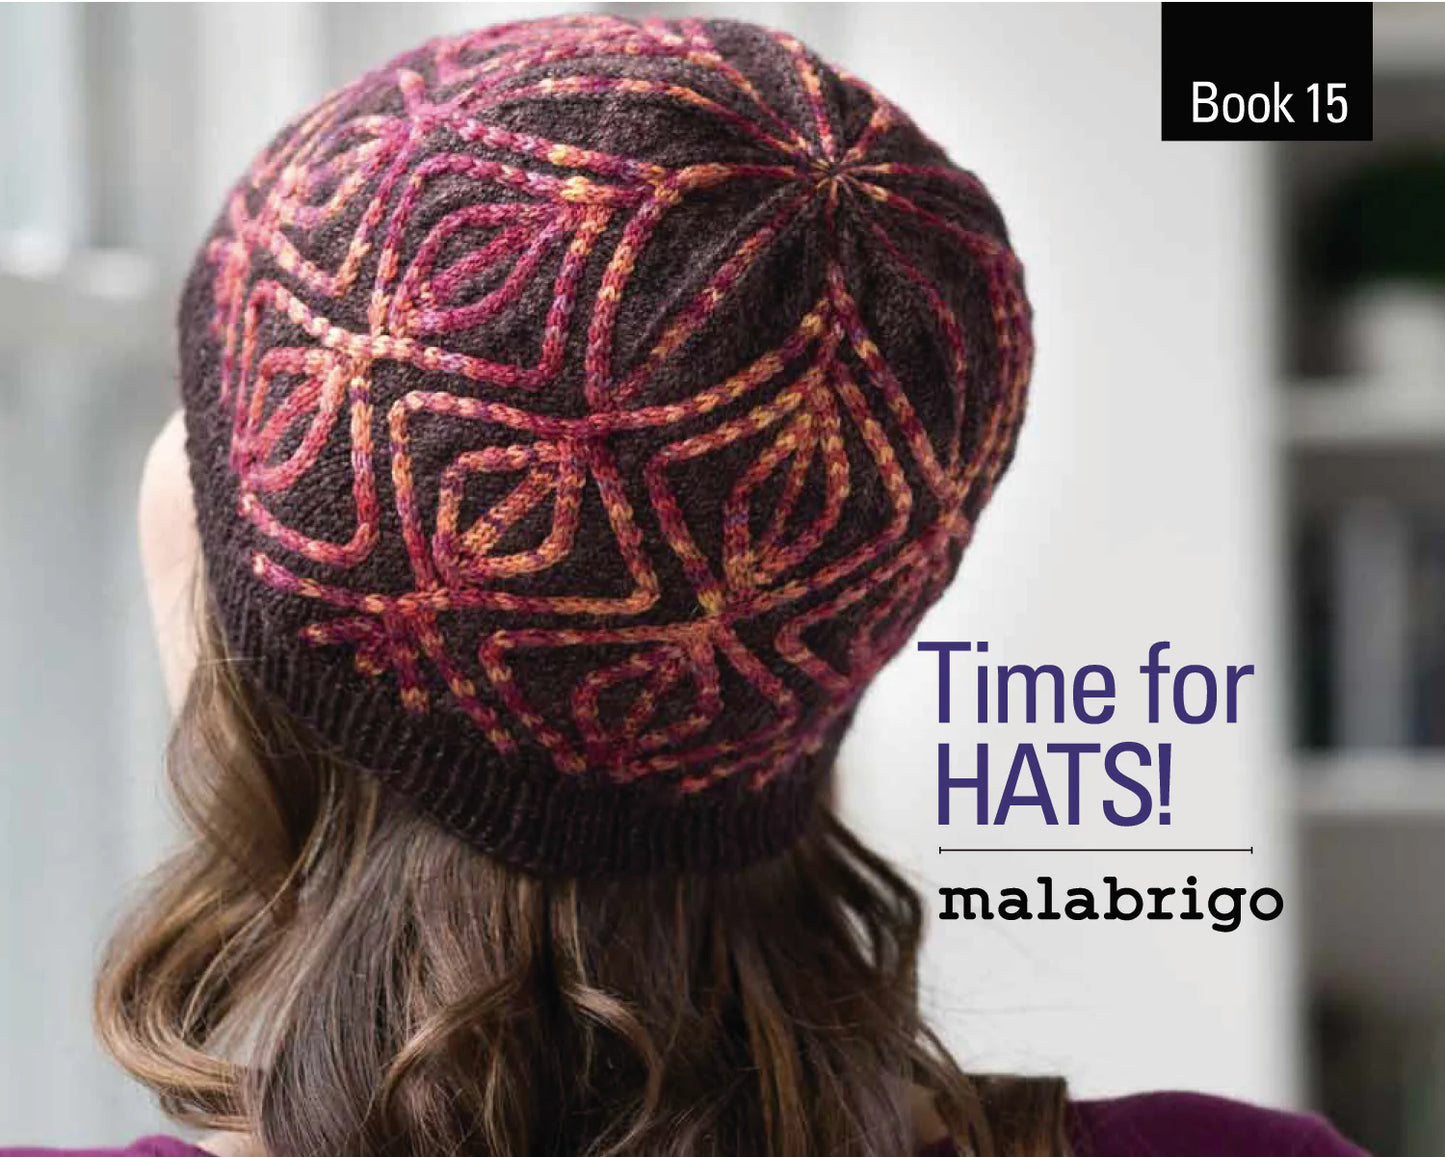 Malabrigo Book 15 - Time for HATS!